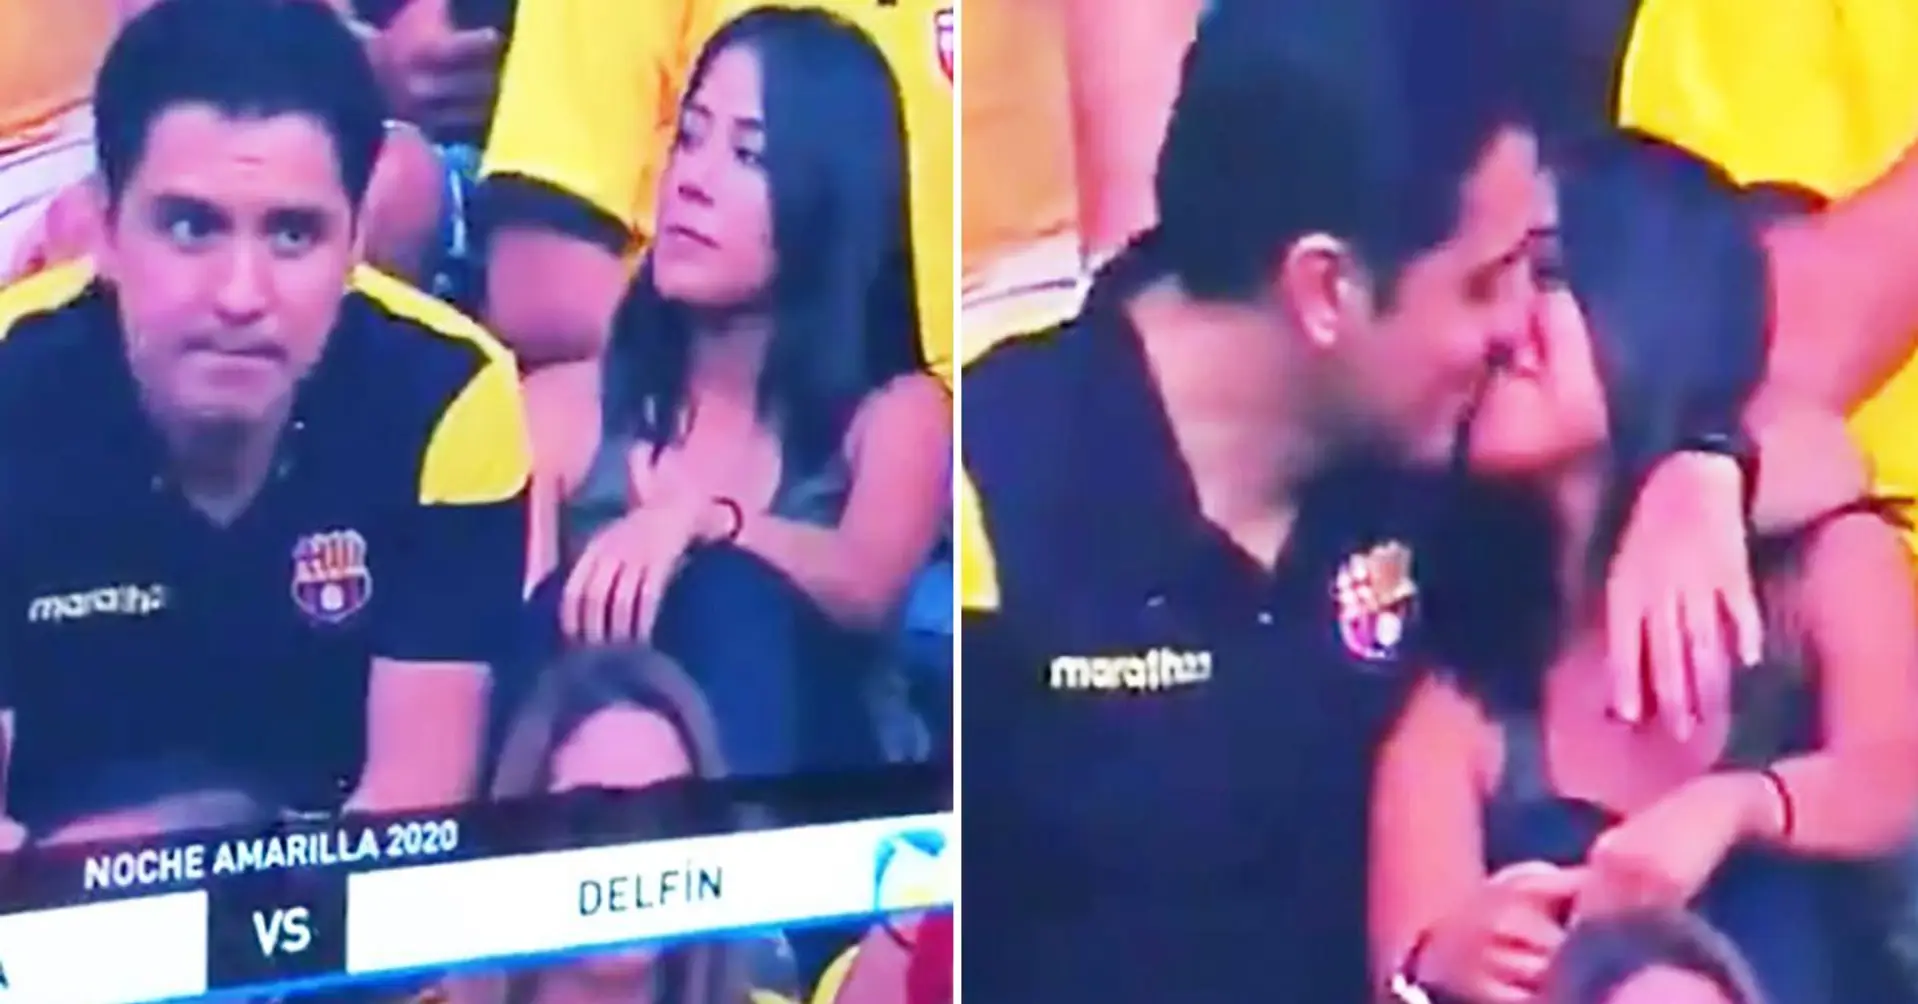 Le telecamere catturano il momento umiliante, in cui un tifoso ha tradito sua moglie allo stadio